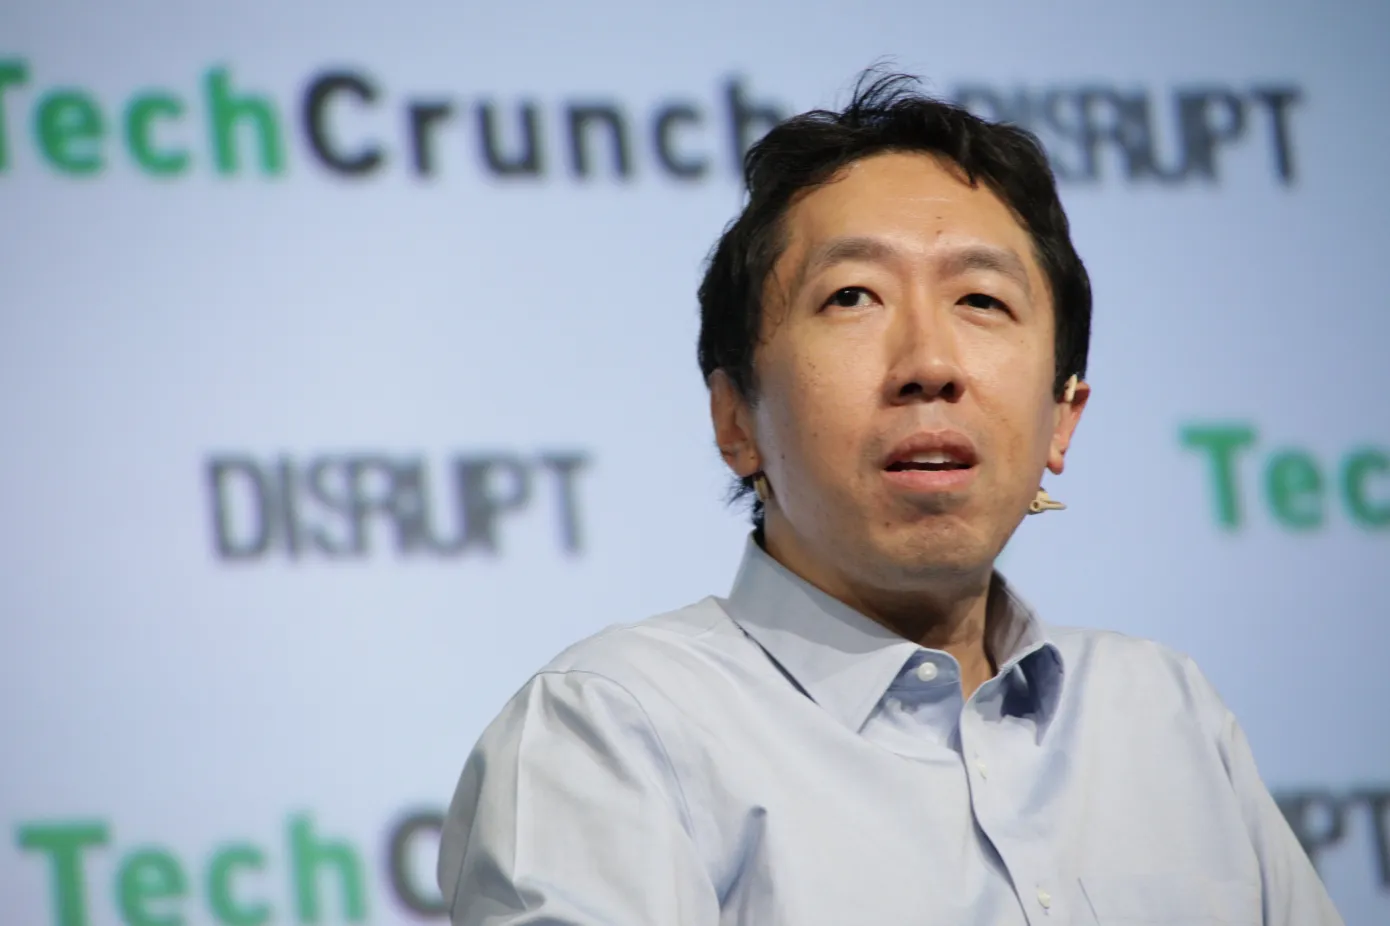 Amazon utnevner Andrew Ng, ekspert på kunstig intelligens, til sitt styre midt i kappløpet om generativ kunstig intelligens